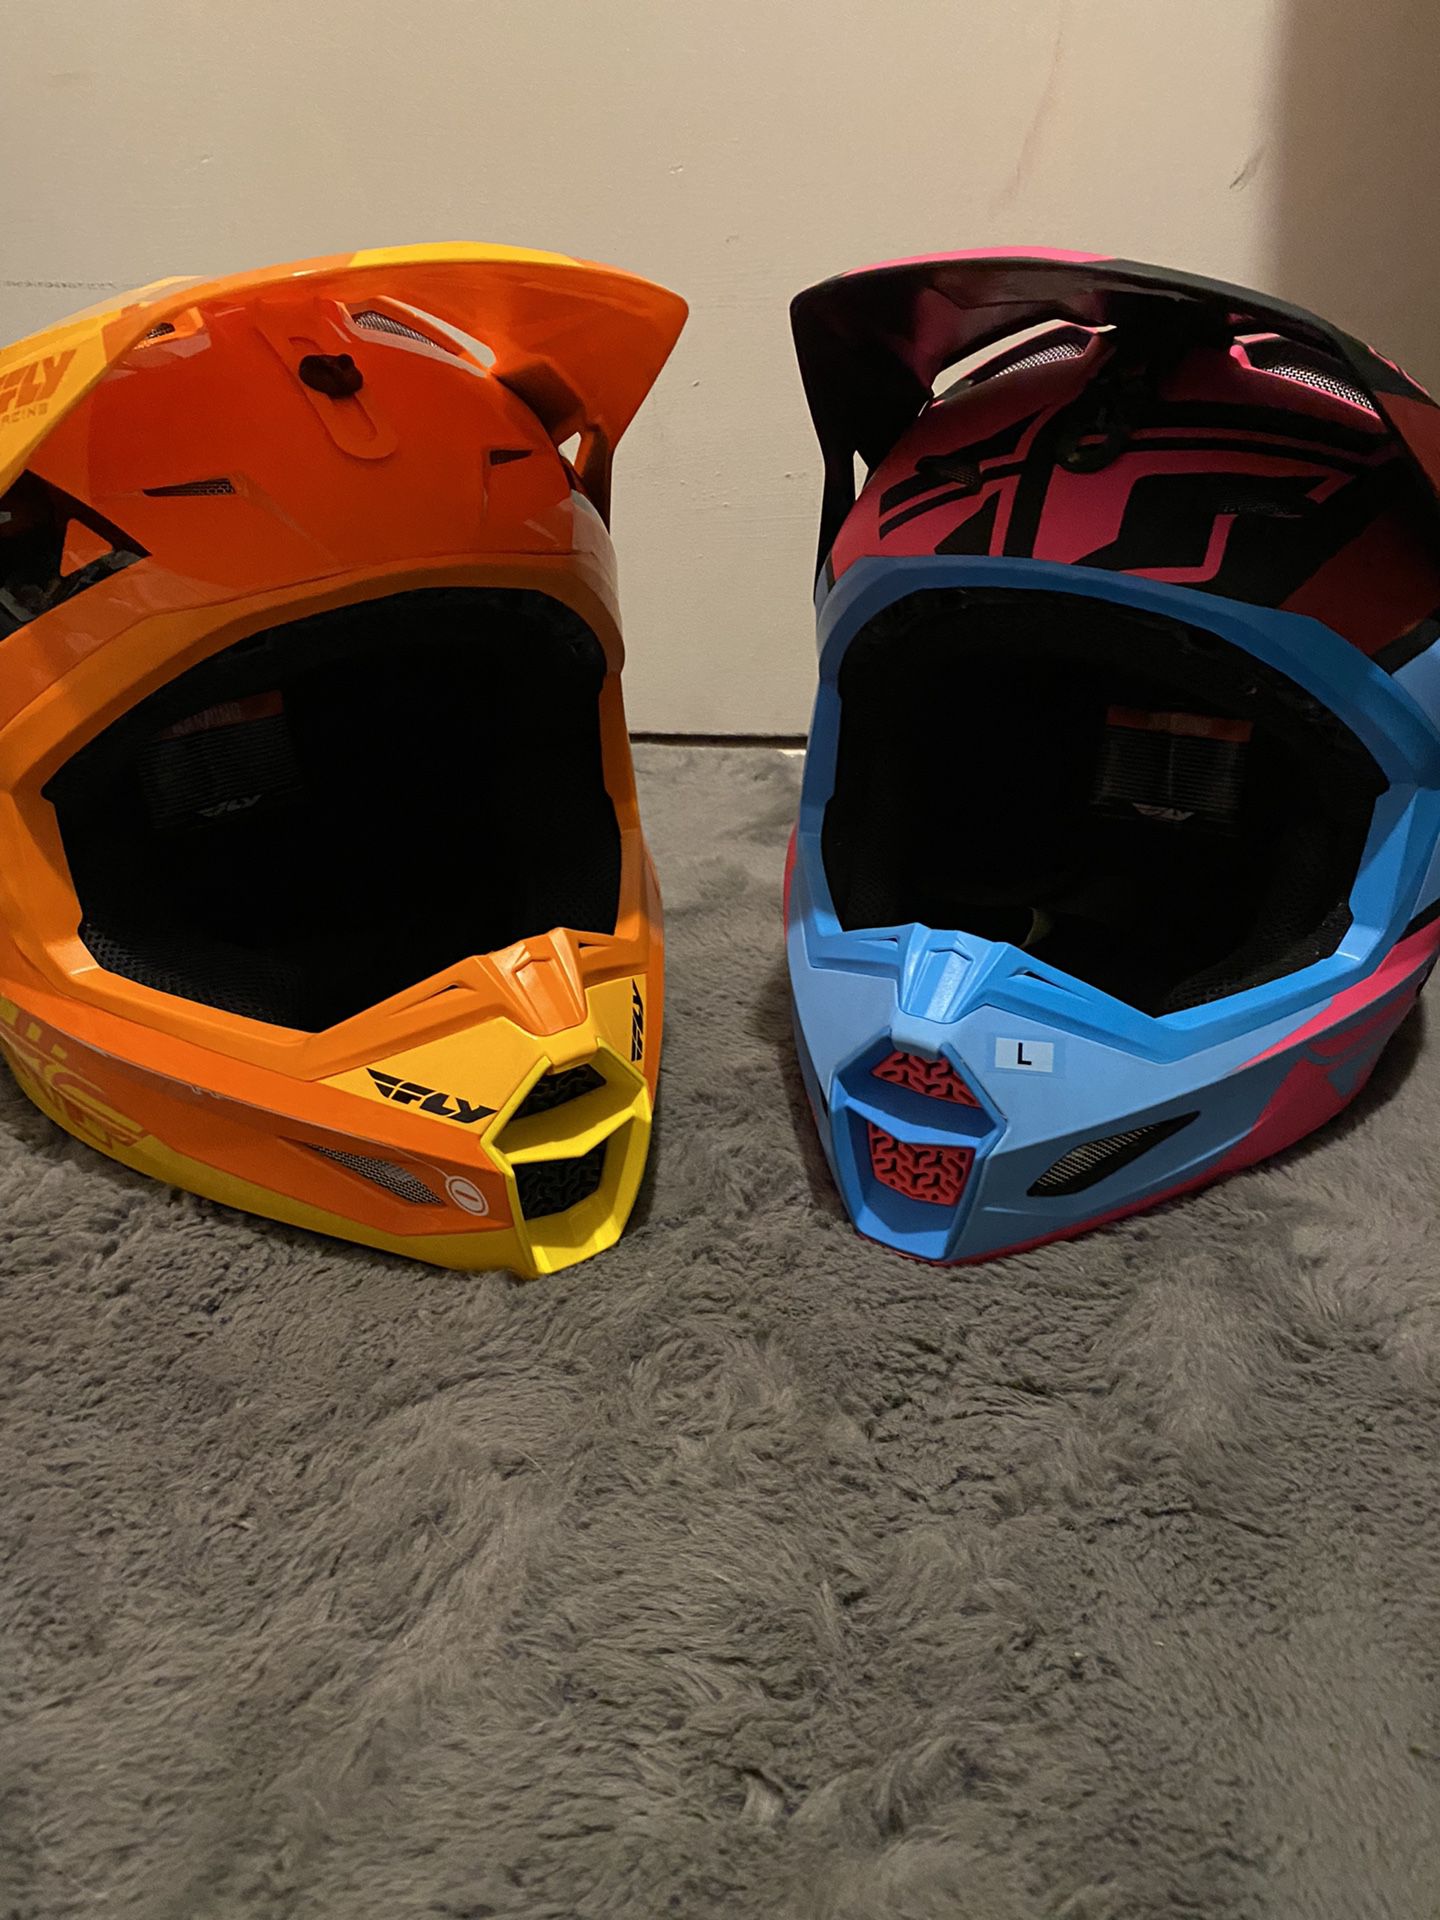 FLY Atv Helmet